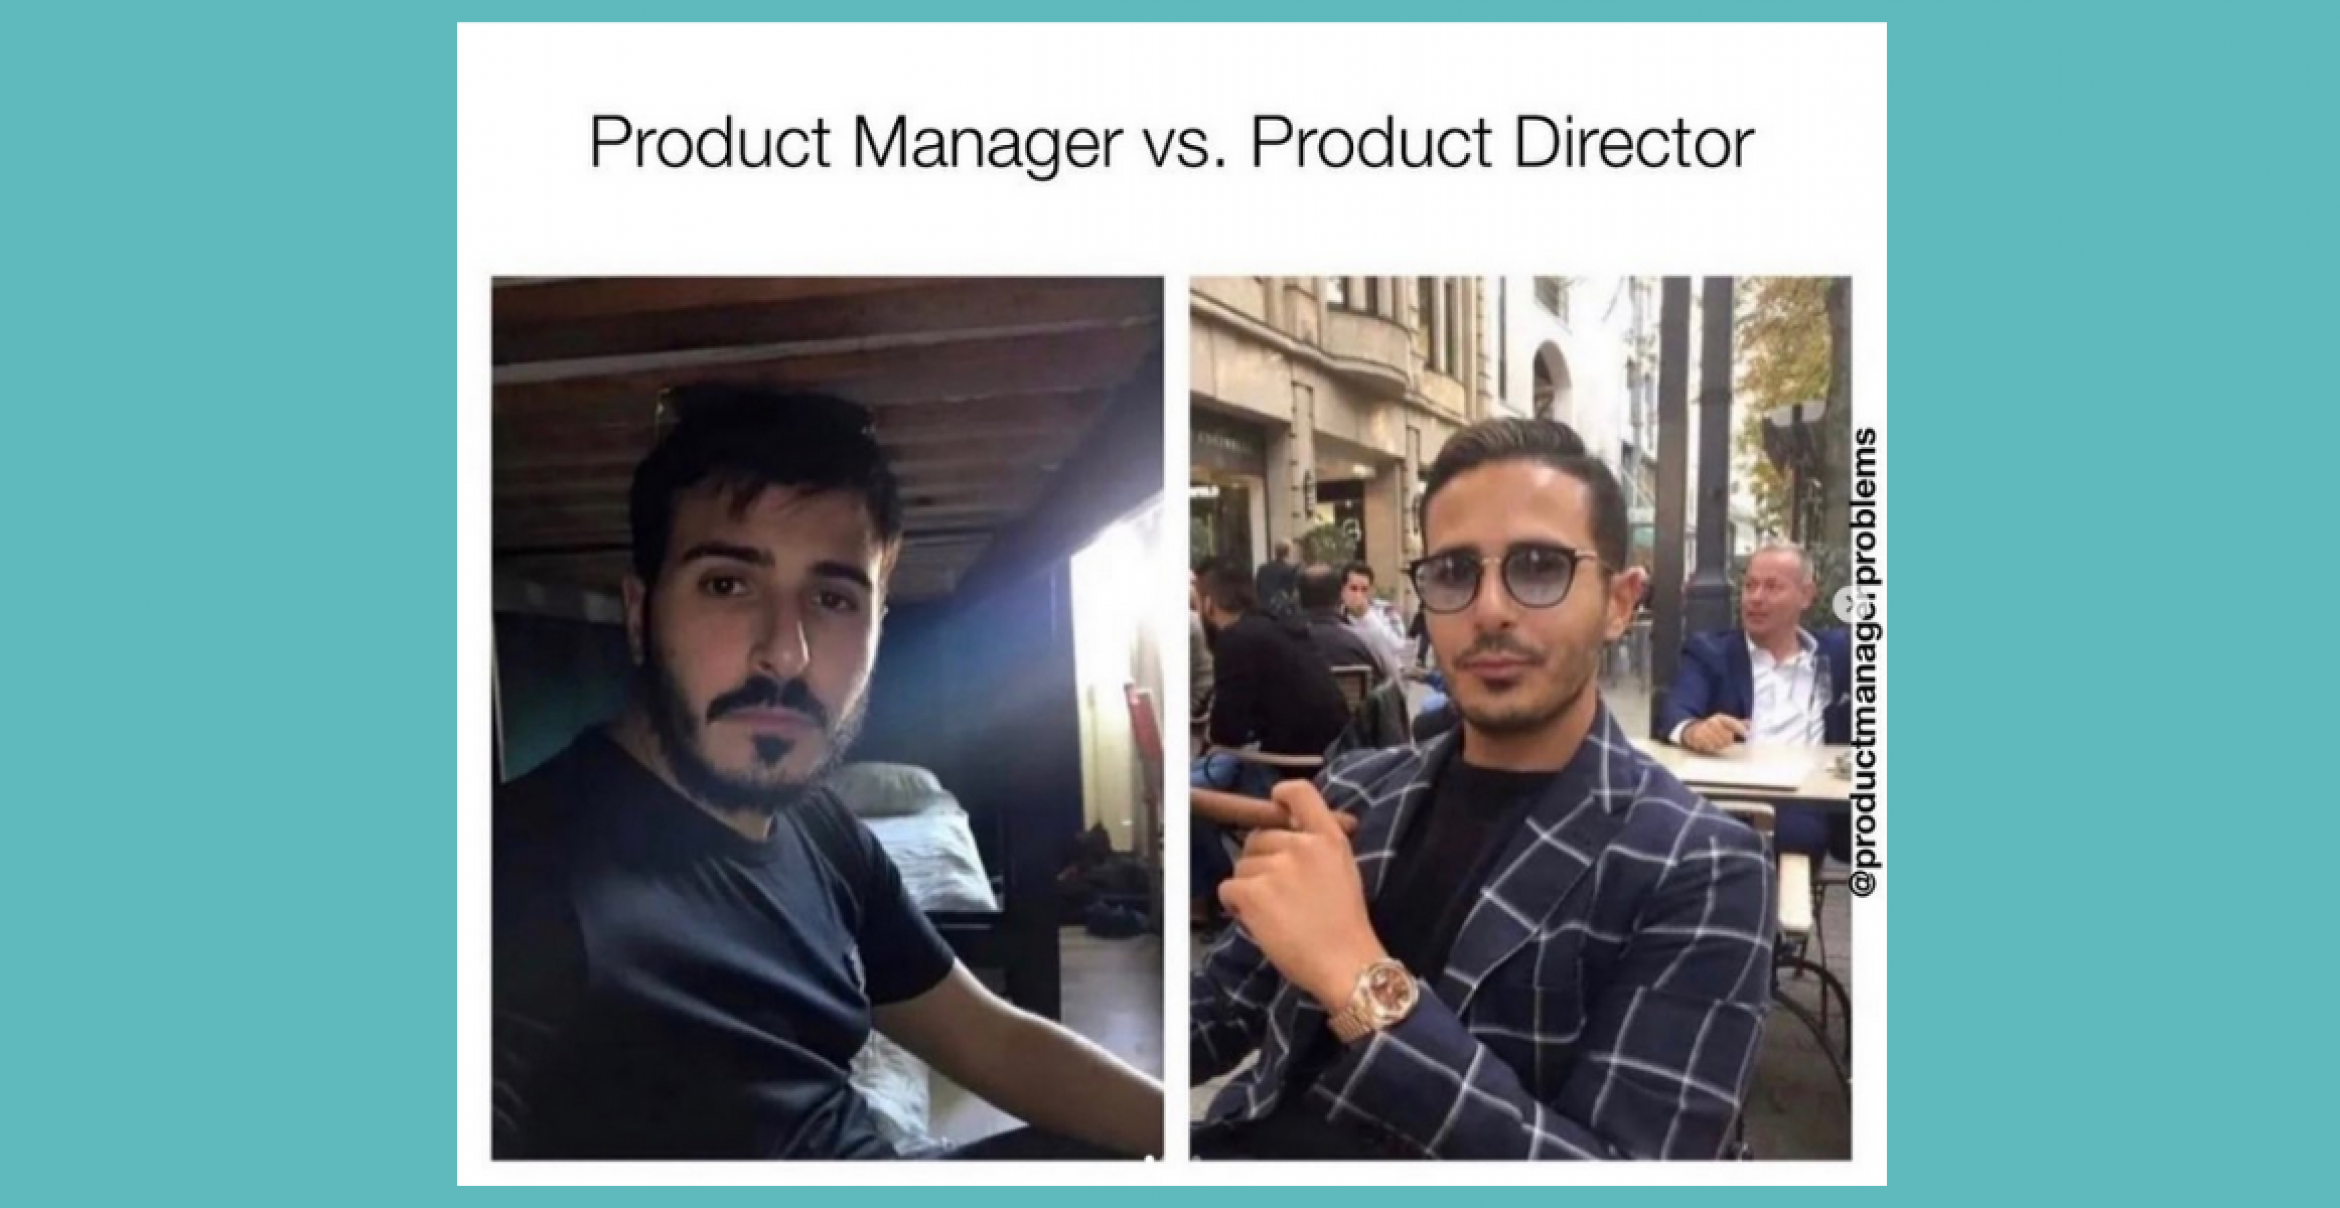 Diese Memes sprechen allen Produkt-Manager:innen aus der Seele